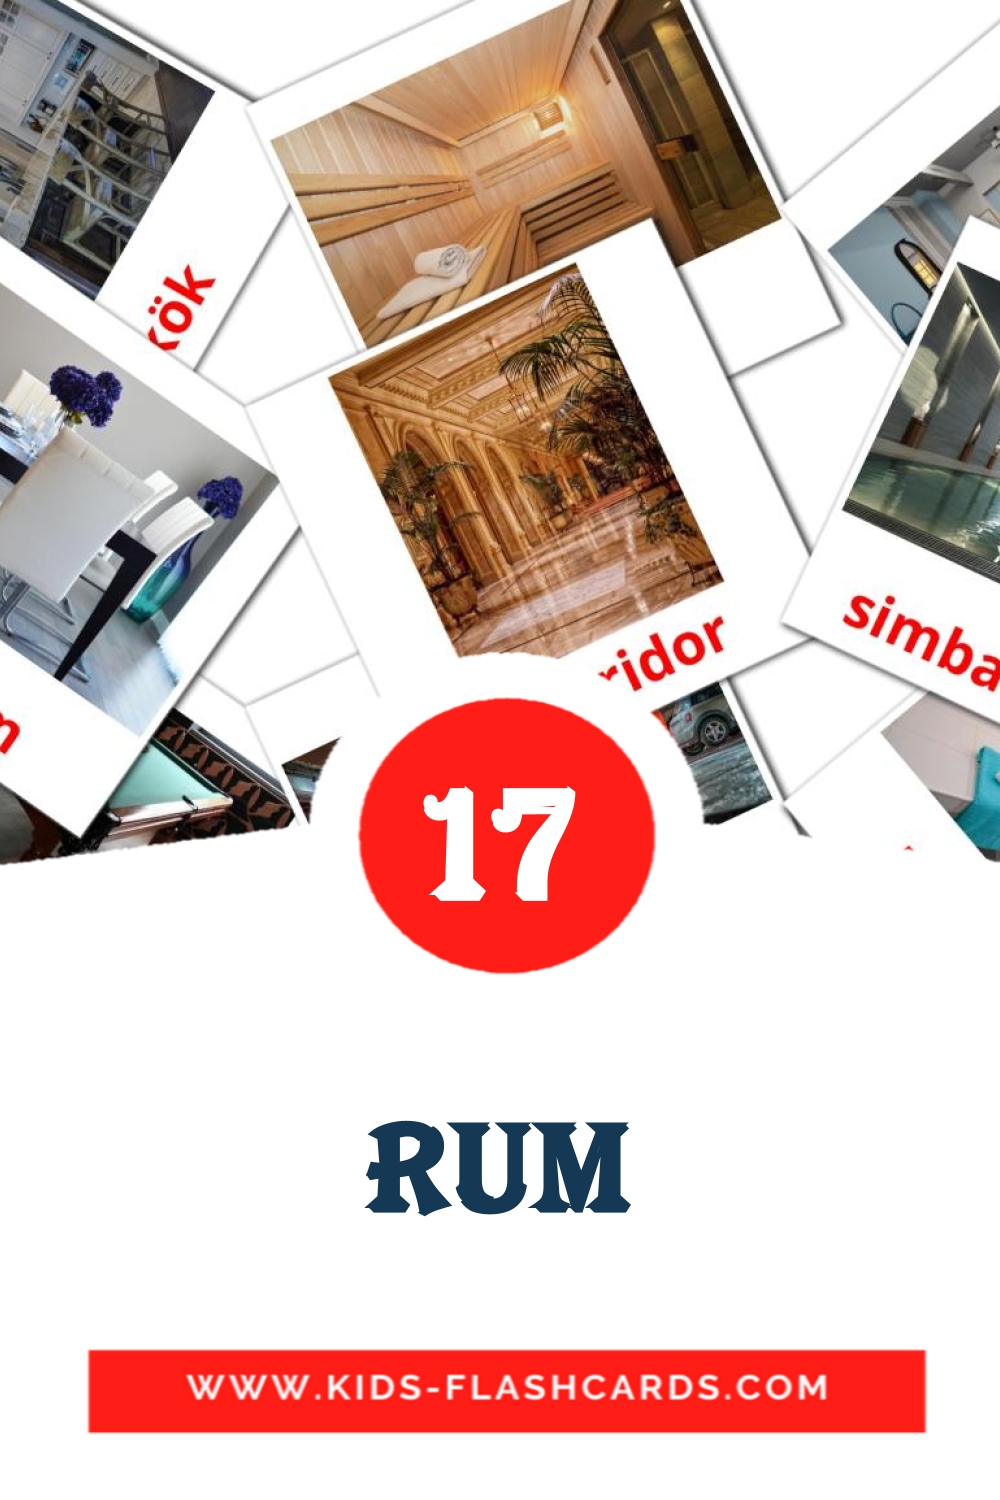 17 Rum fotokaarten voor kleuters in het zweeds